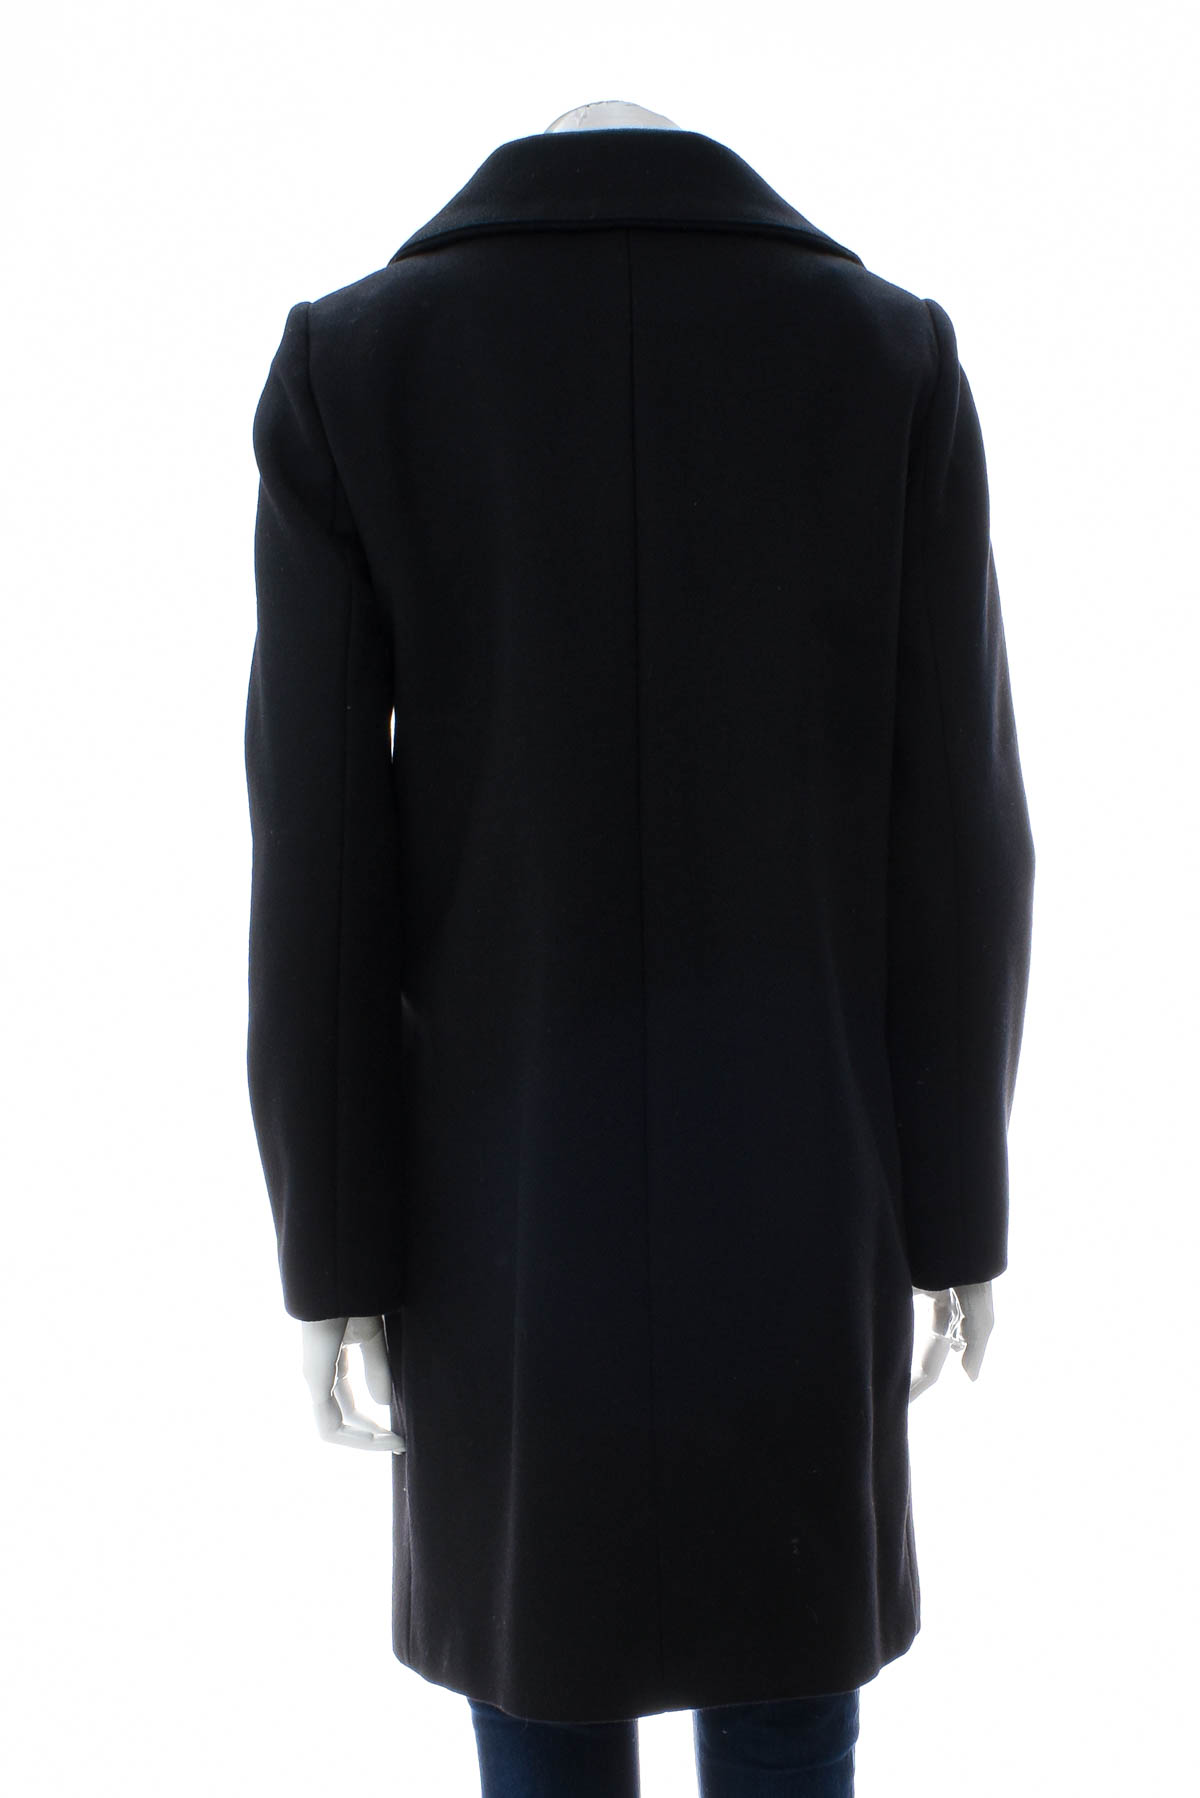 Women's coat - HALLHUBER - 1